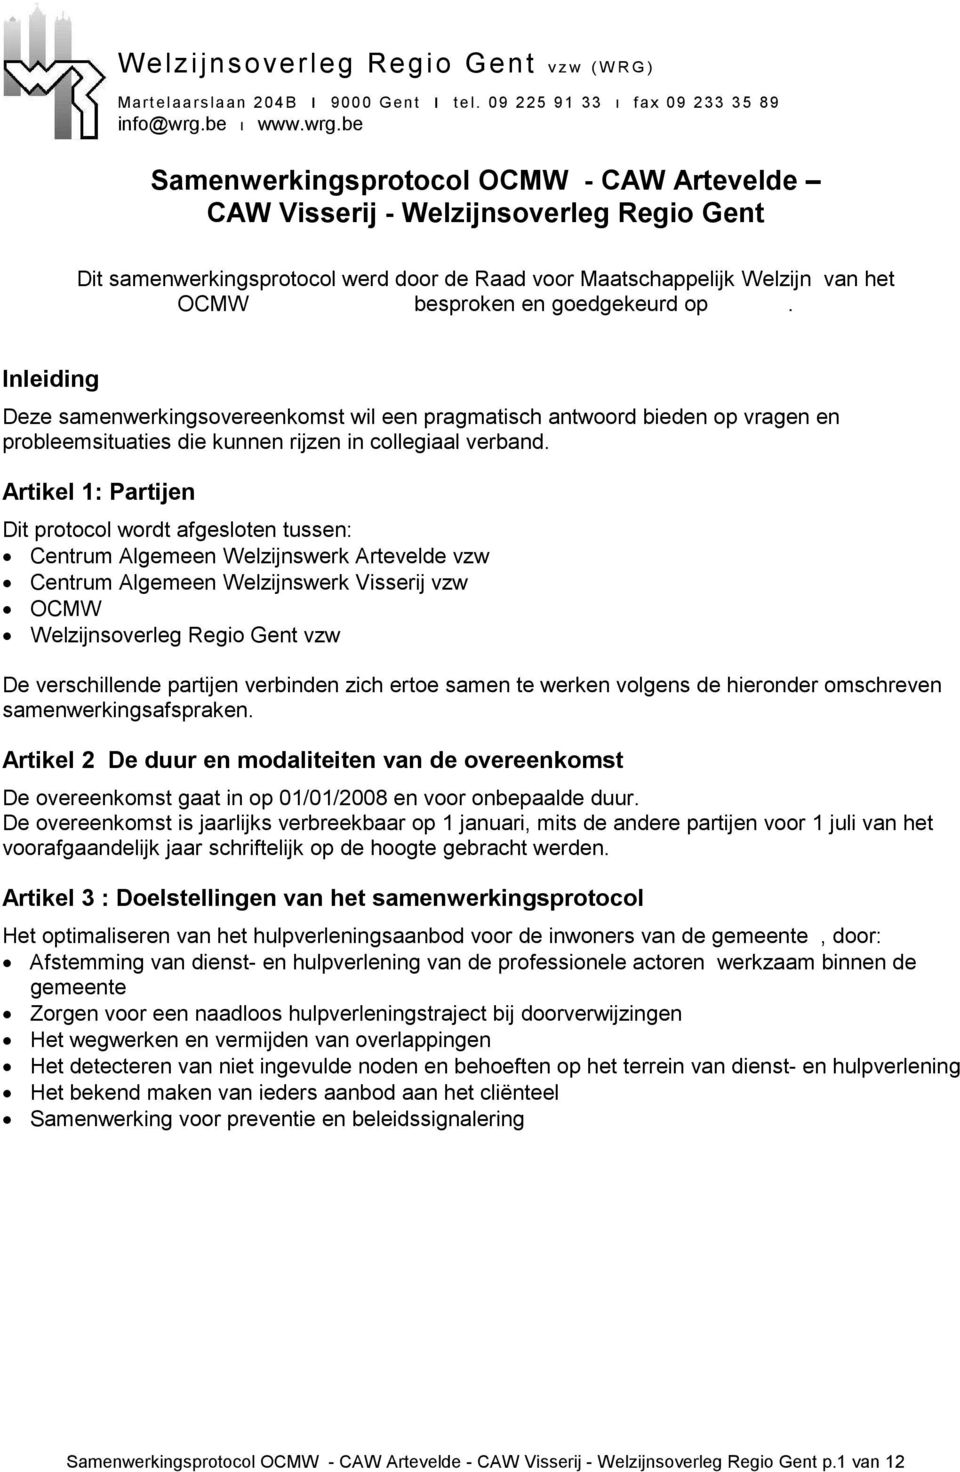 be Samenwerkingsprotocol OCMW - CAW Artevelde CAW Visserij - Welzijnsoverleg Regio Gent Dit samenwerkingsprotocol werd door de Raad voor Maatschappelijk Welzijn van het OCMW besproken en goedgekeurd